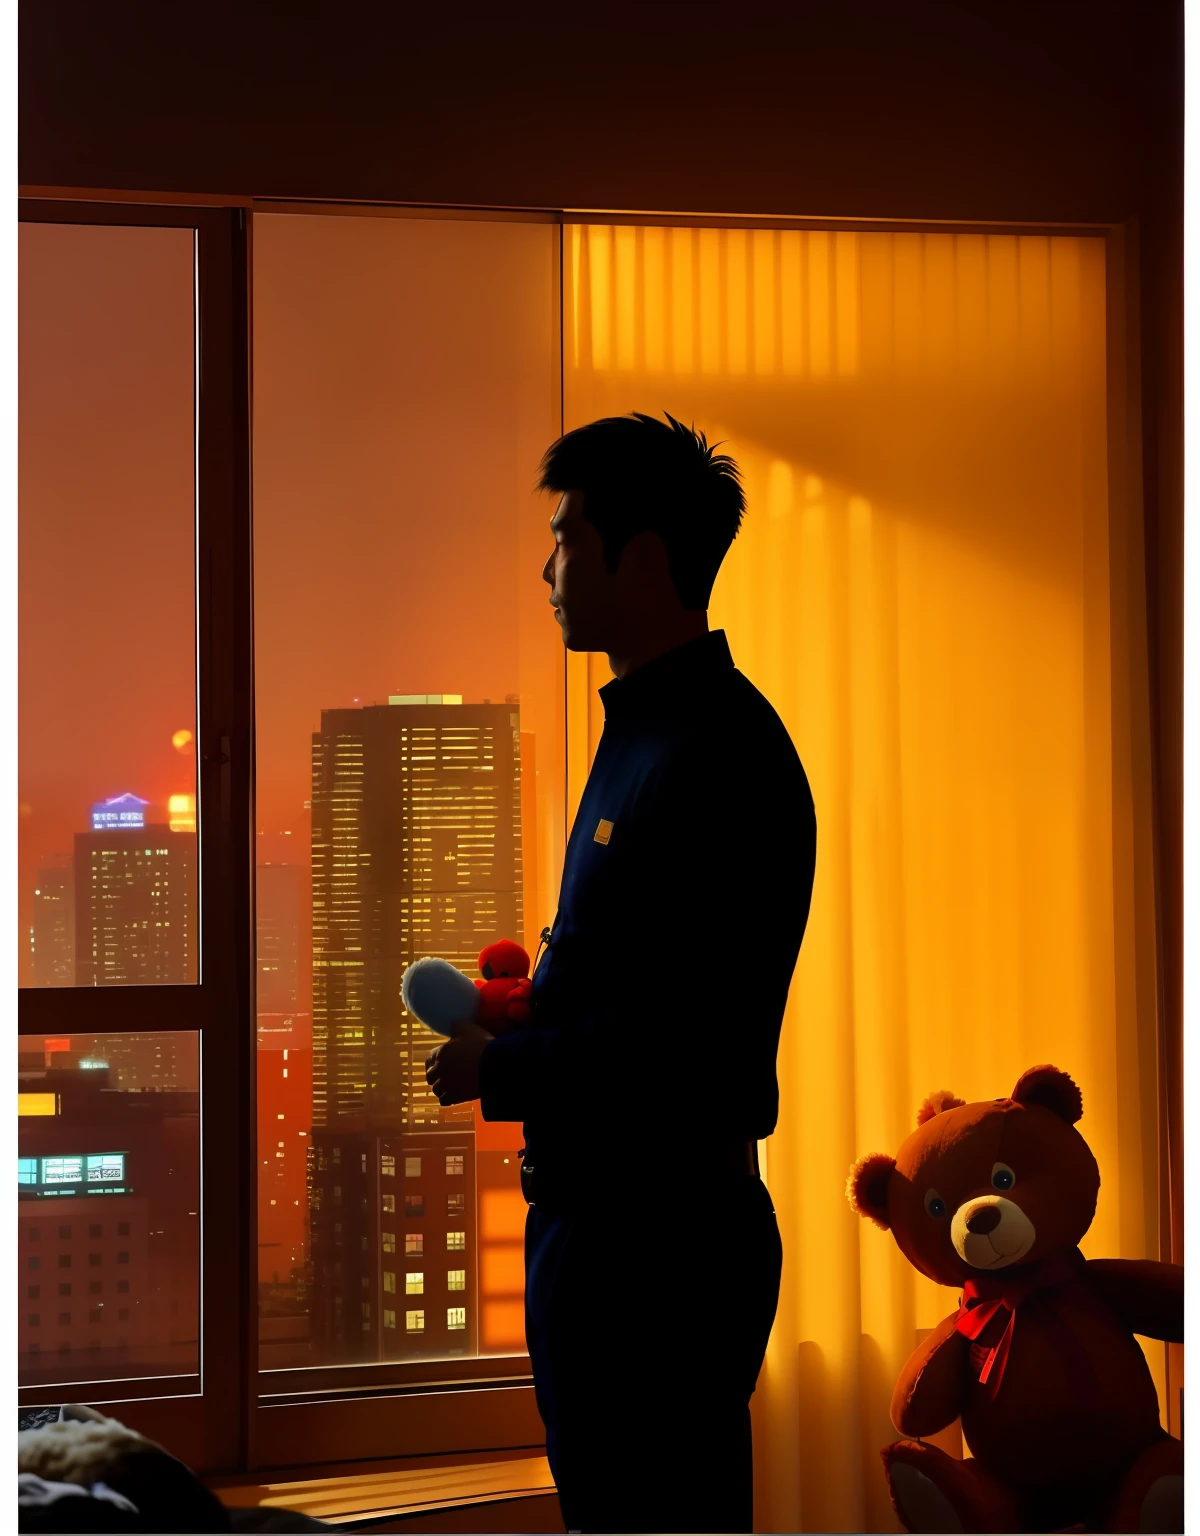 35 Jahre altes chinesisches Fett，180cm groß，Gewicht 90kg，Teddybär halten, Silhouette，Durch bodentiefe Fenster，Schauen Sie nachts aus dem Fenster in der Stadt，Betonen Sie die düstere Atmosphäre，Die Gesichtsform des Charakters sollte hochauflösend sein